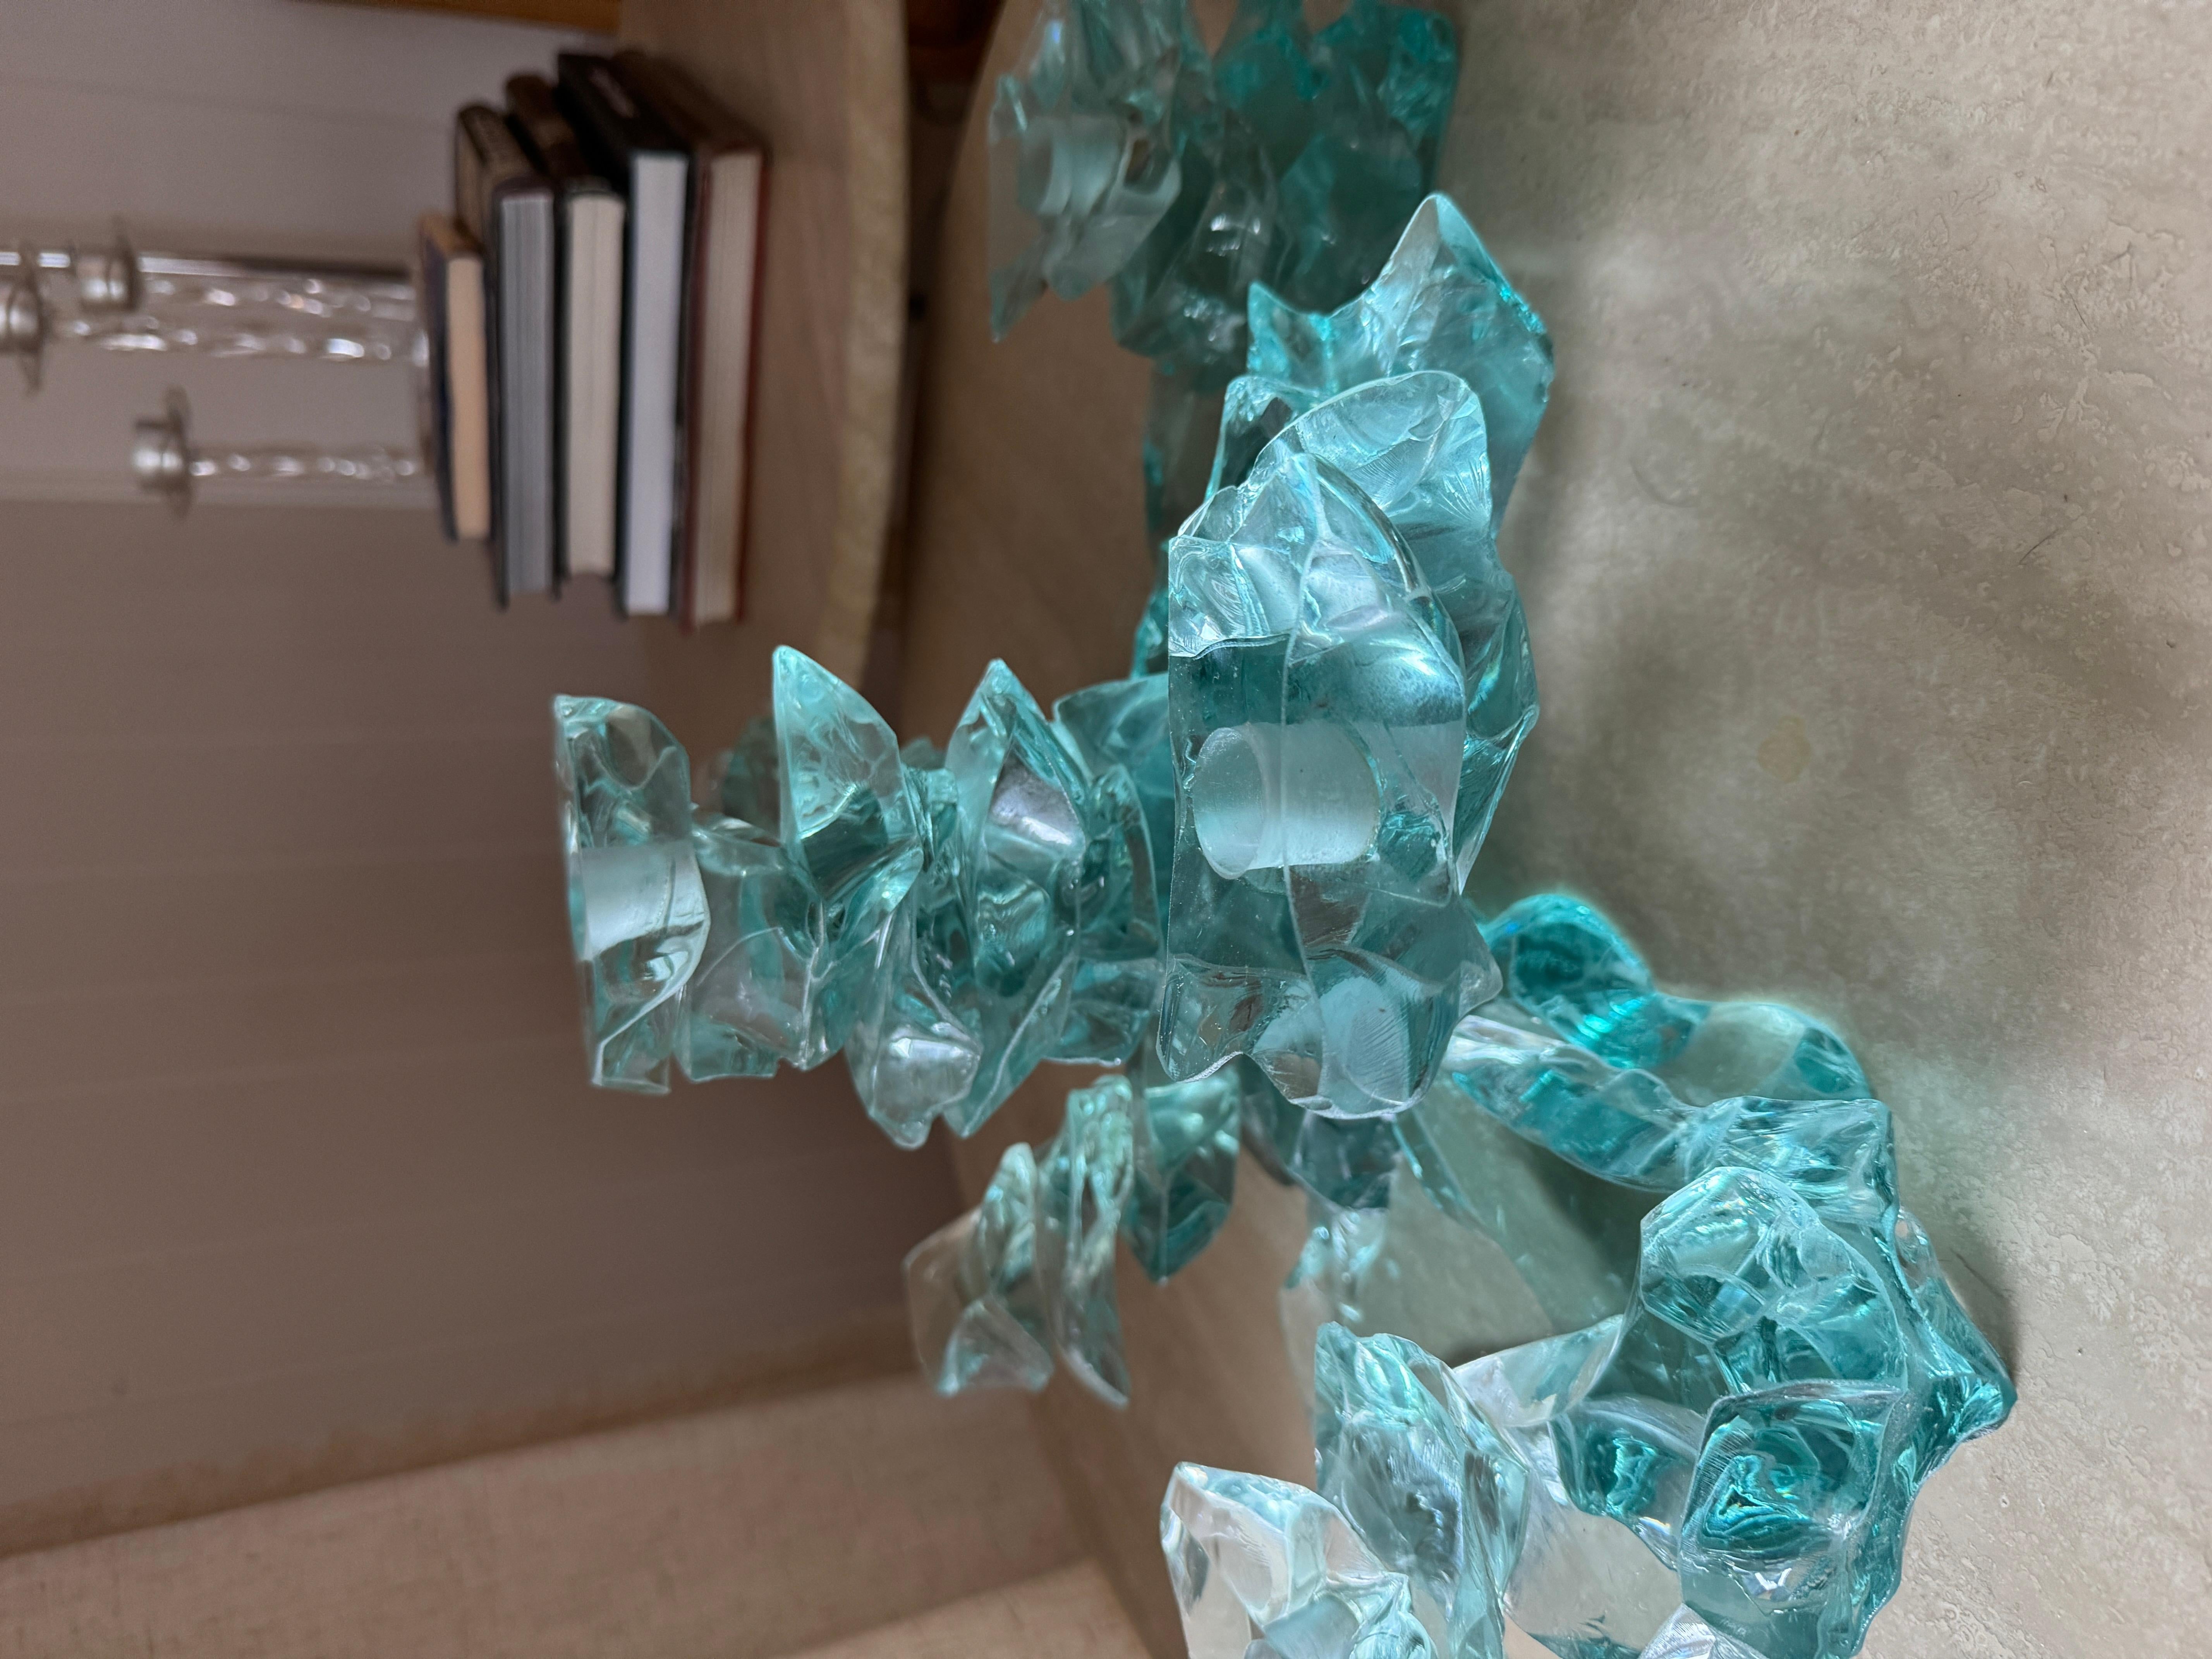 Eine Original-Glaskandelaber-Kunstskulptur von Bill Meek Studios. Der texanische Künstler Bill Meeks ist für seine Glasskulpturen bekannt. Geschliffenes klares/grünes Glas ist in einer Drehung gestapelt.

16